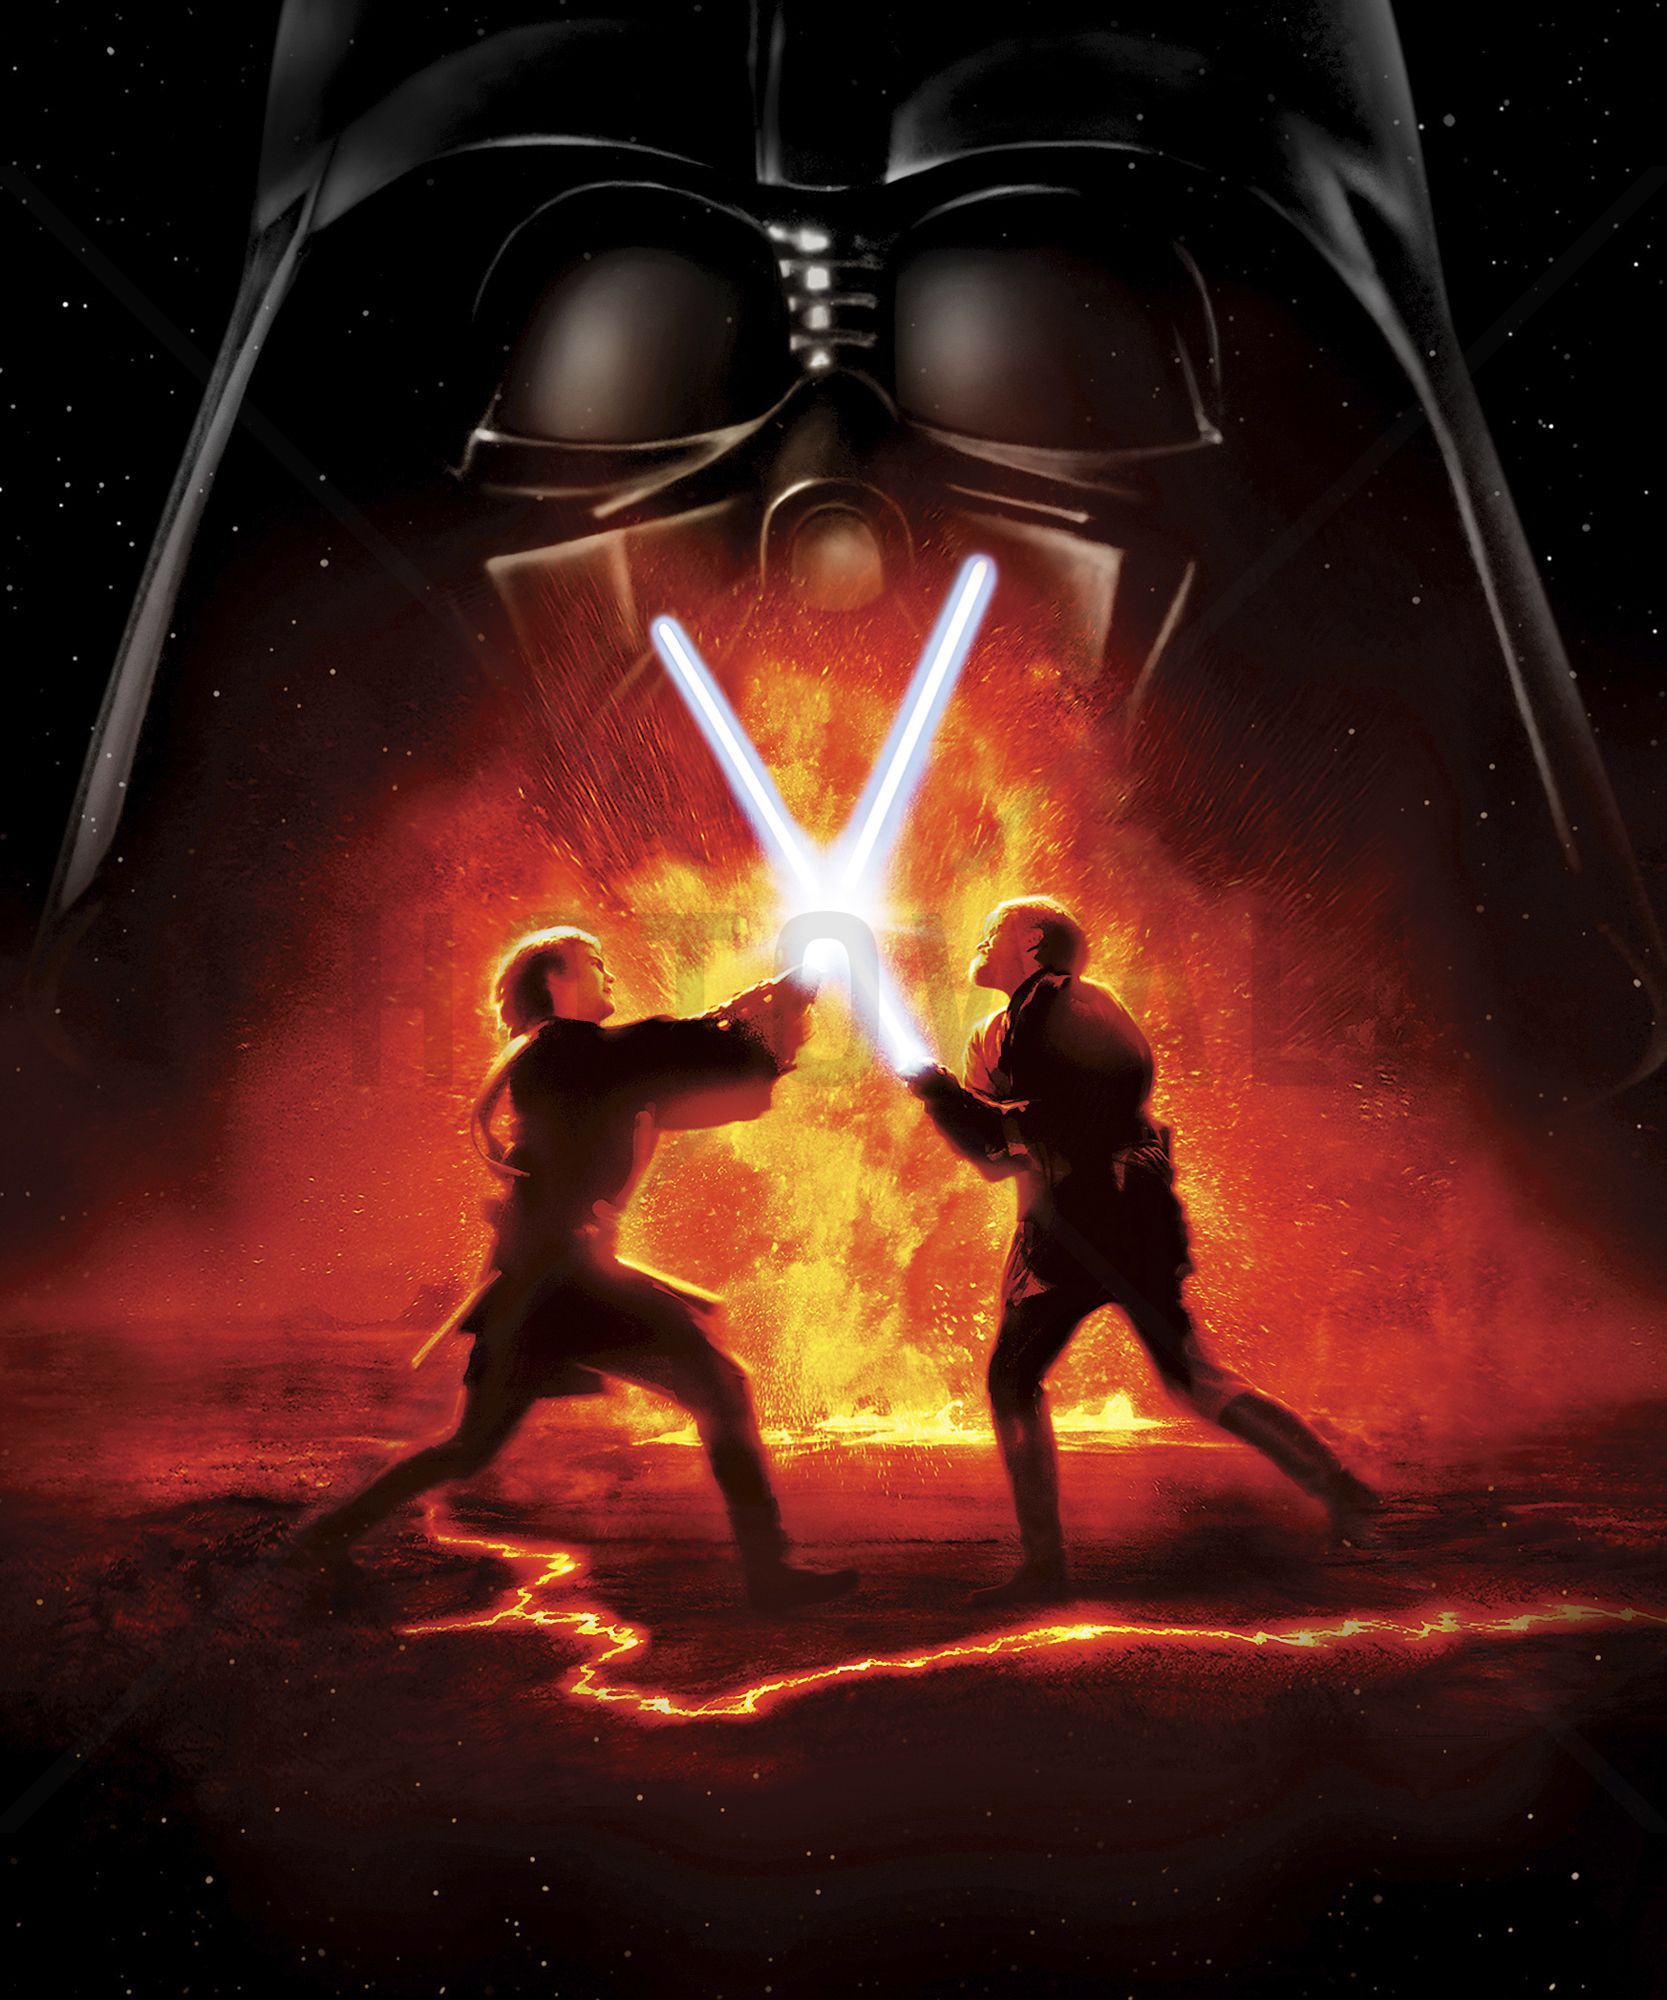 HD wallpaper 1920x1080 digital art star wars Darth Vader Sith Maul  Darth Sidious  Star wars sith Star wars wallpaper Star wars poster